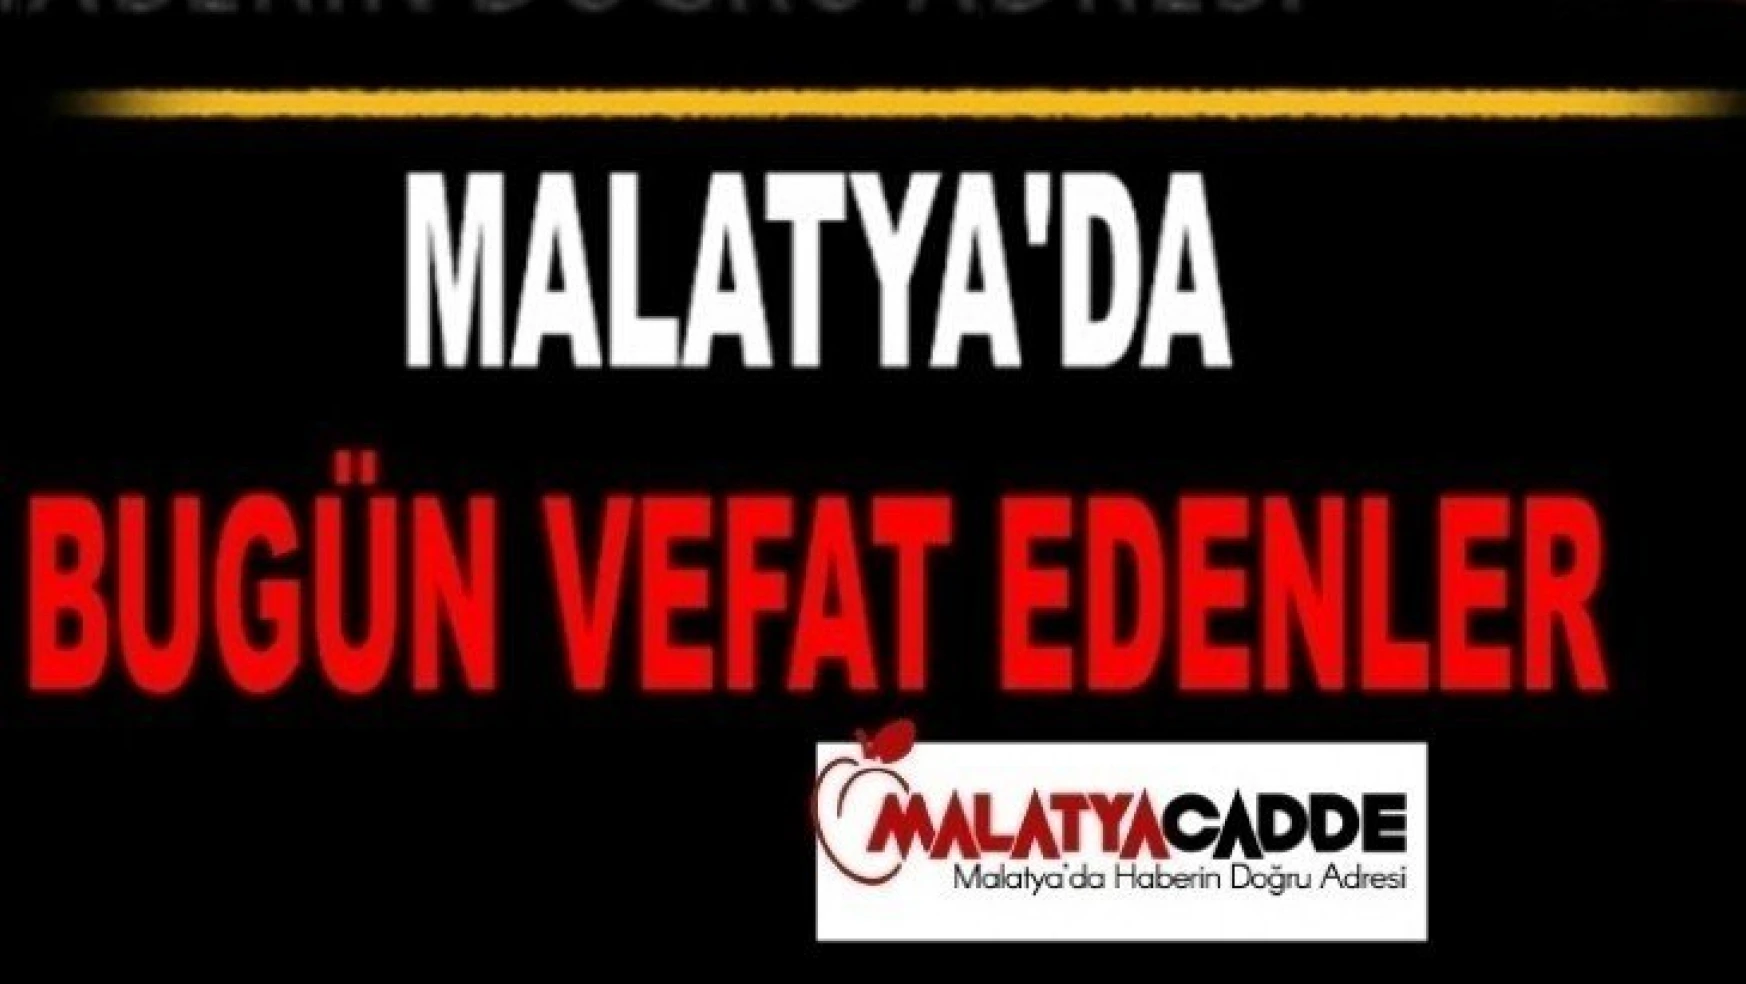 Malatya'da Bugün 9 kişi vefat etti